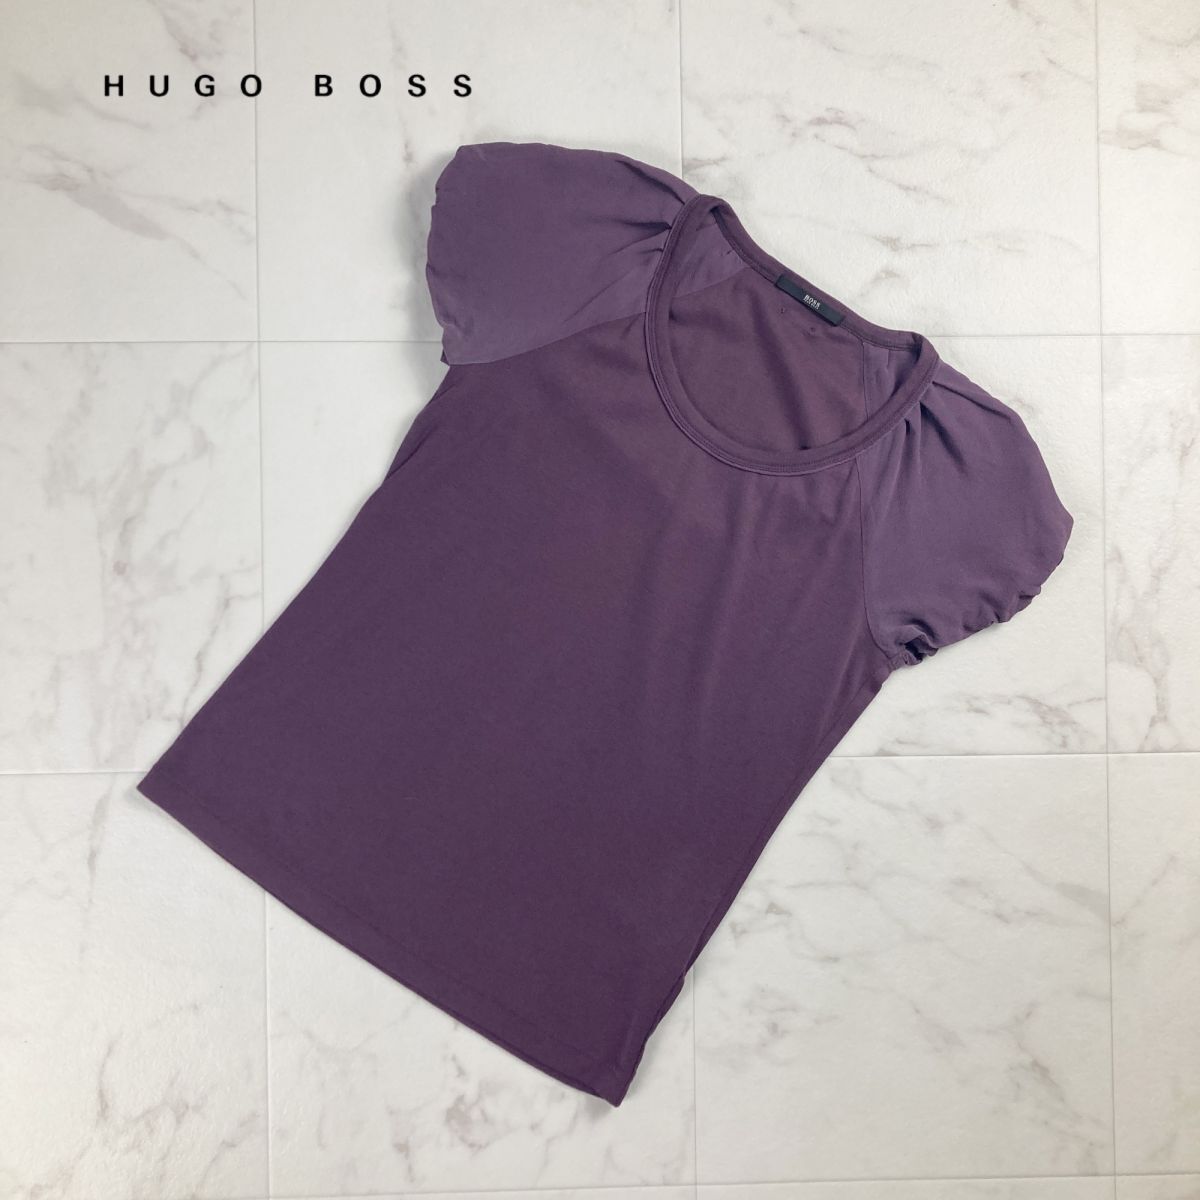 美品 HUGO BOSS ヒューゴボス フレンチスリーブ シルク混 半袖Tシャツ カットソー トップス レディース 紫 パープル サイズS*MC317の画像1